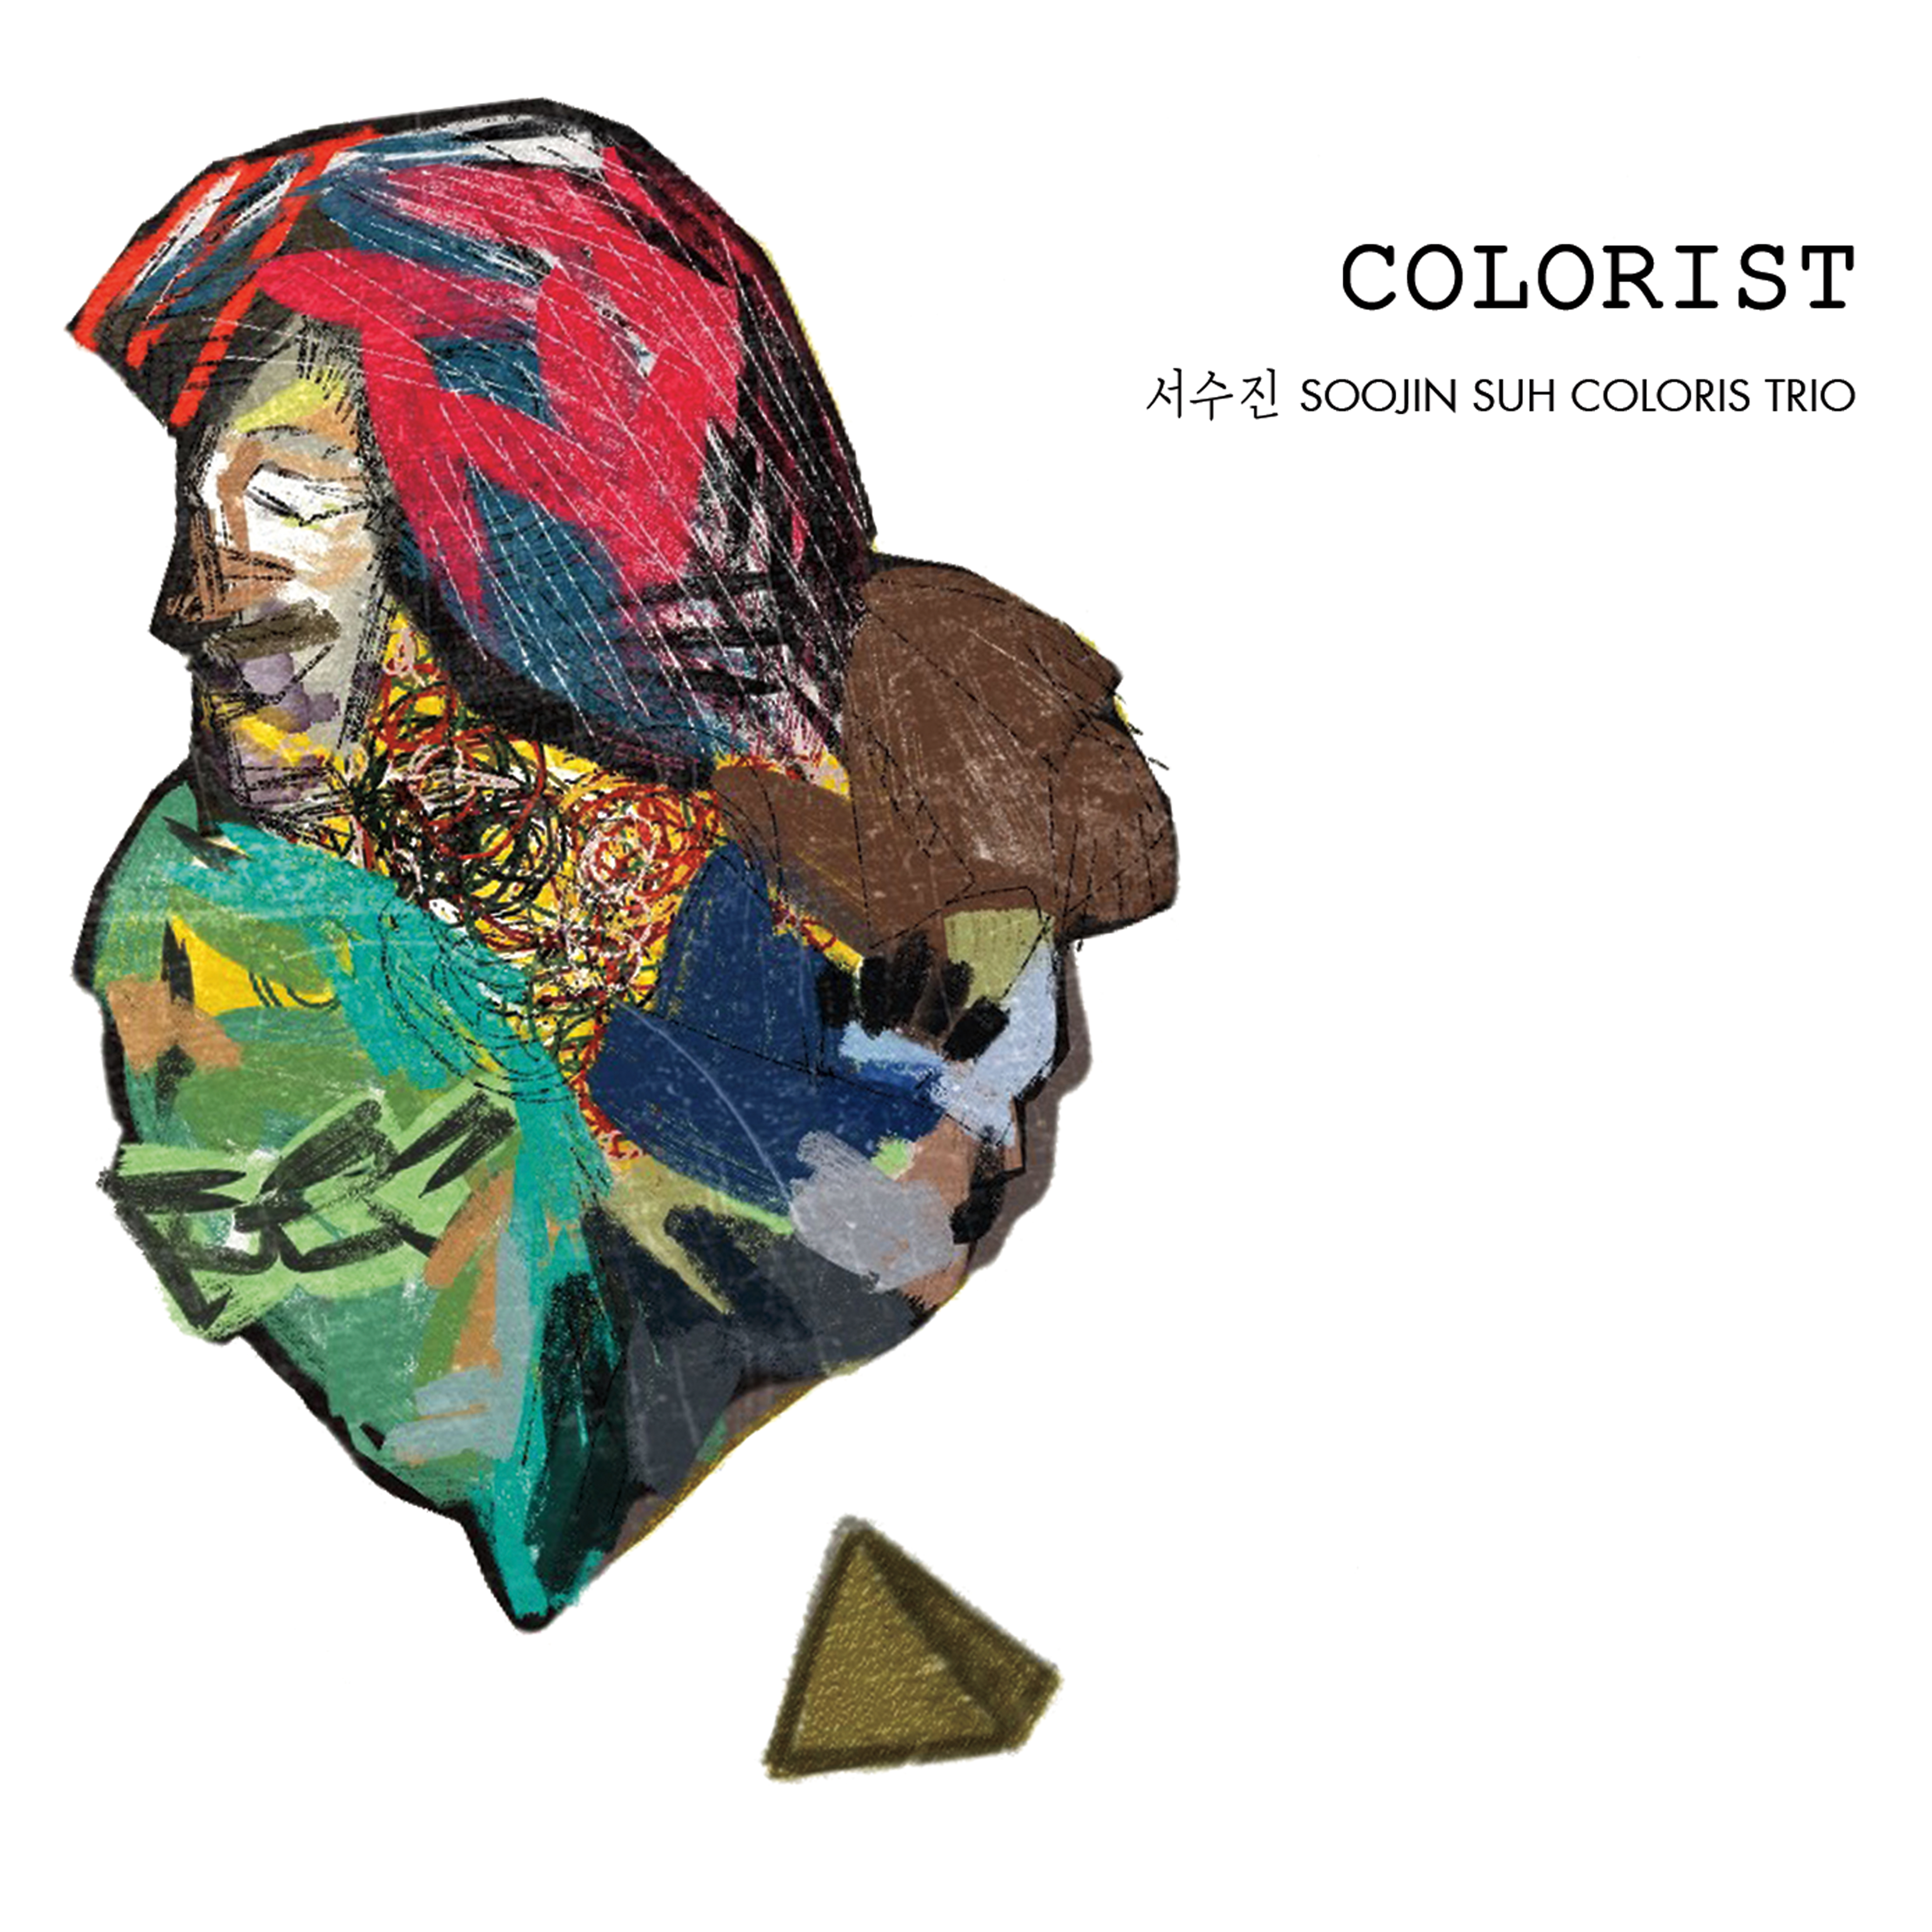 Album art work of Colorist by Soojin Suh